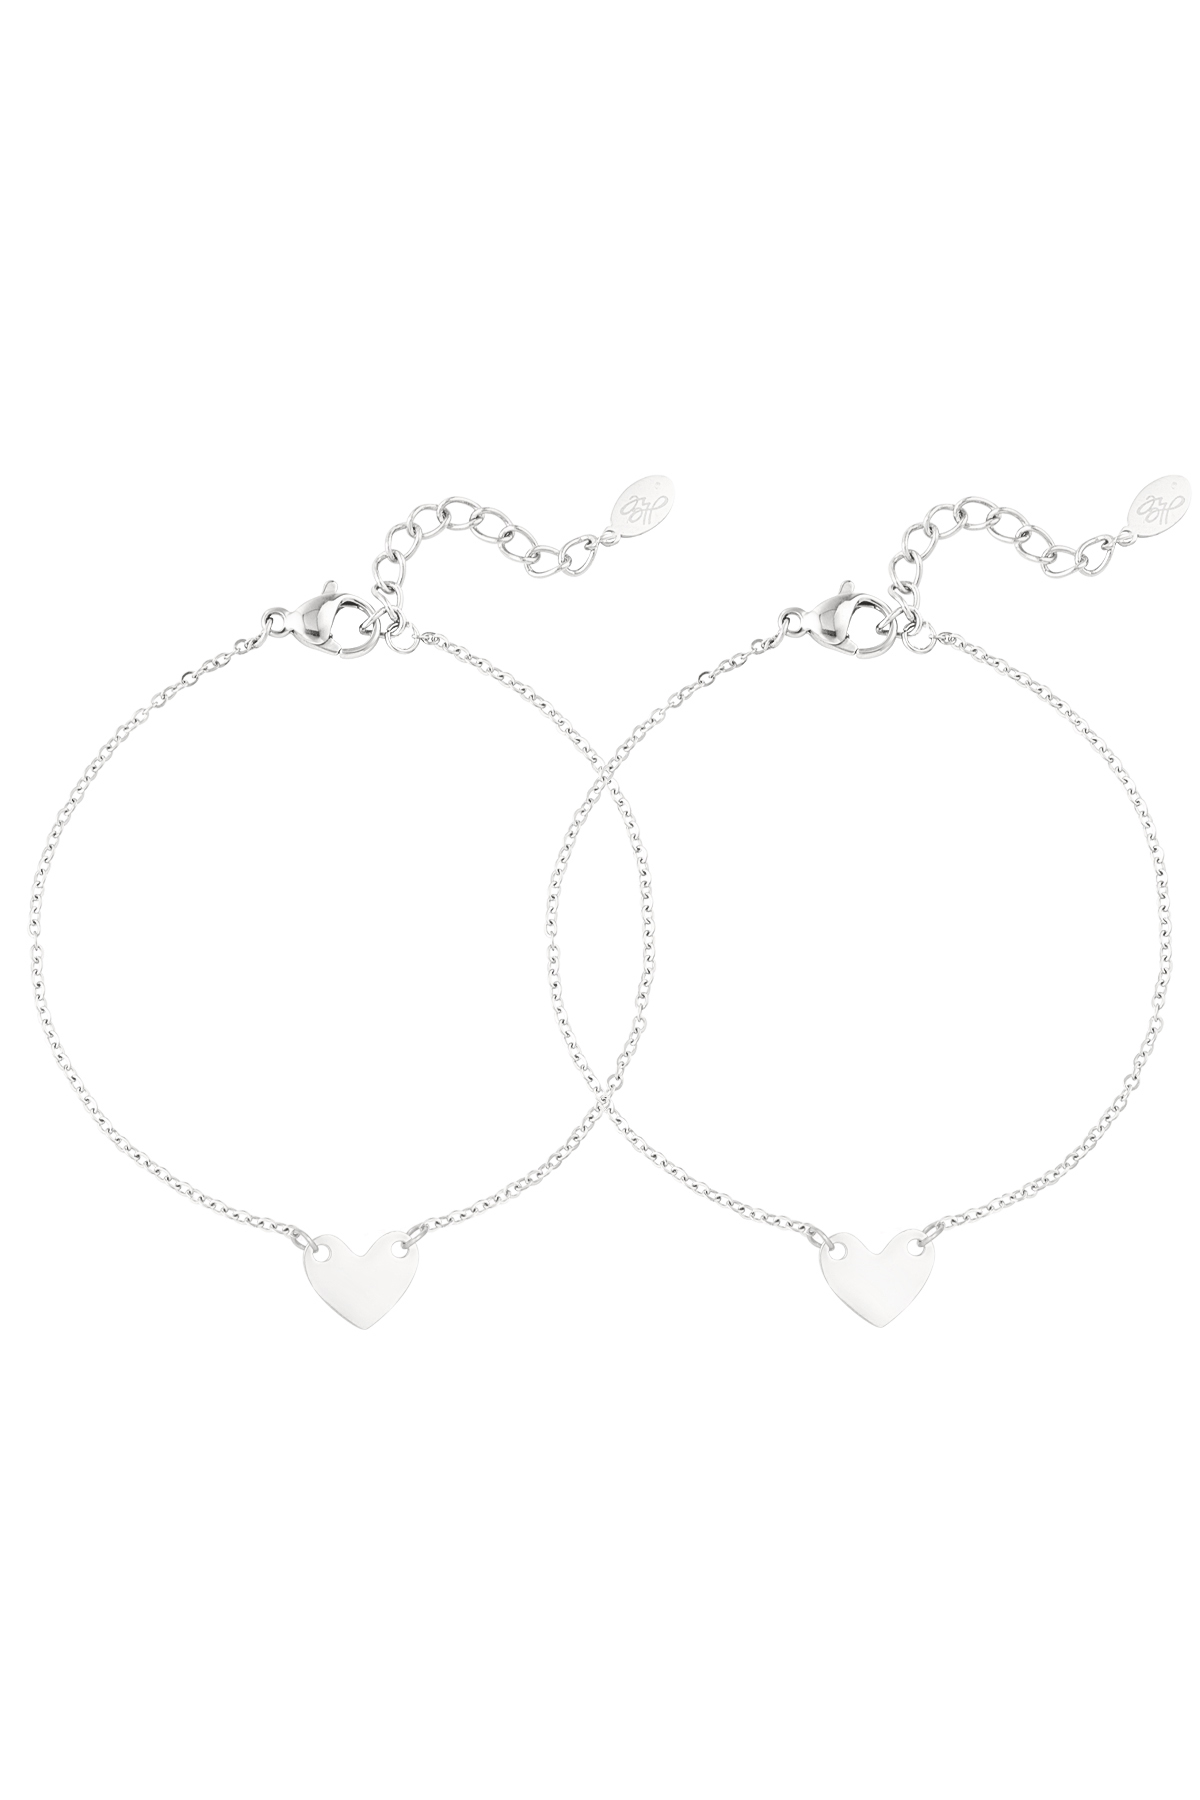 Bracelet enduring affection - silver h5 